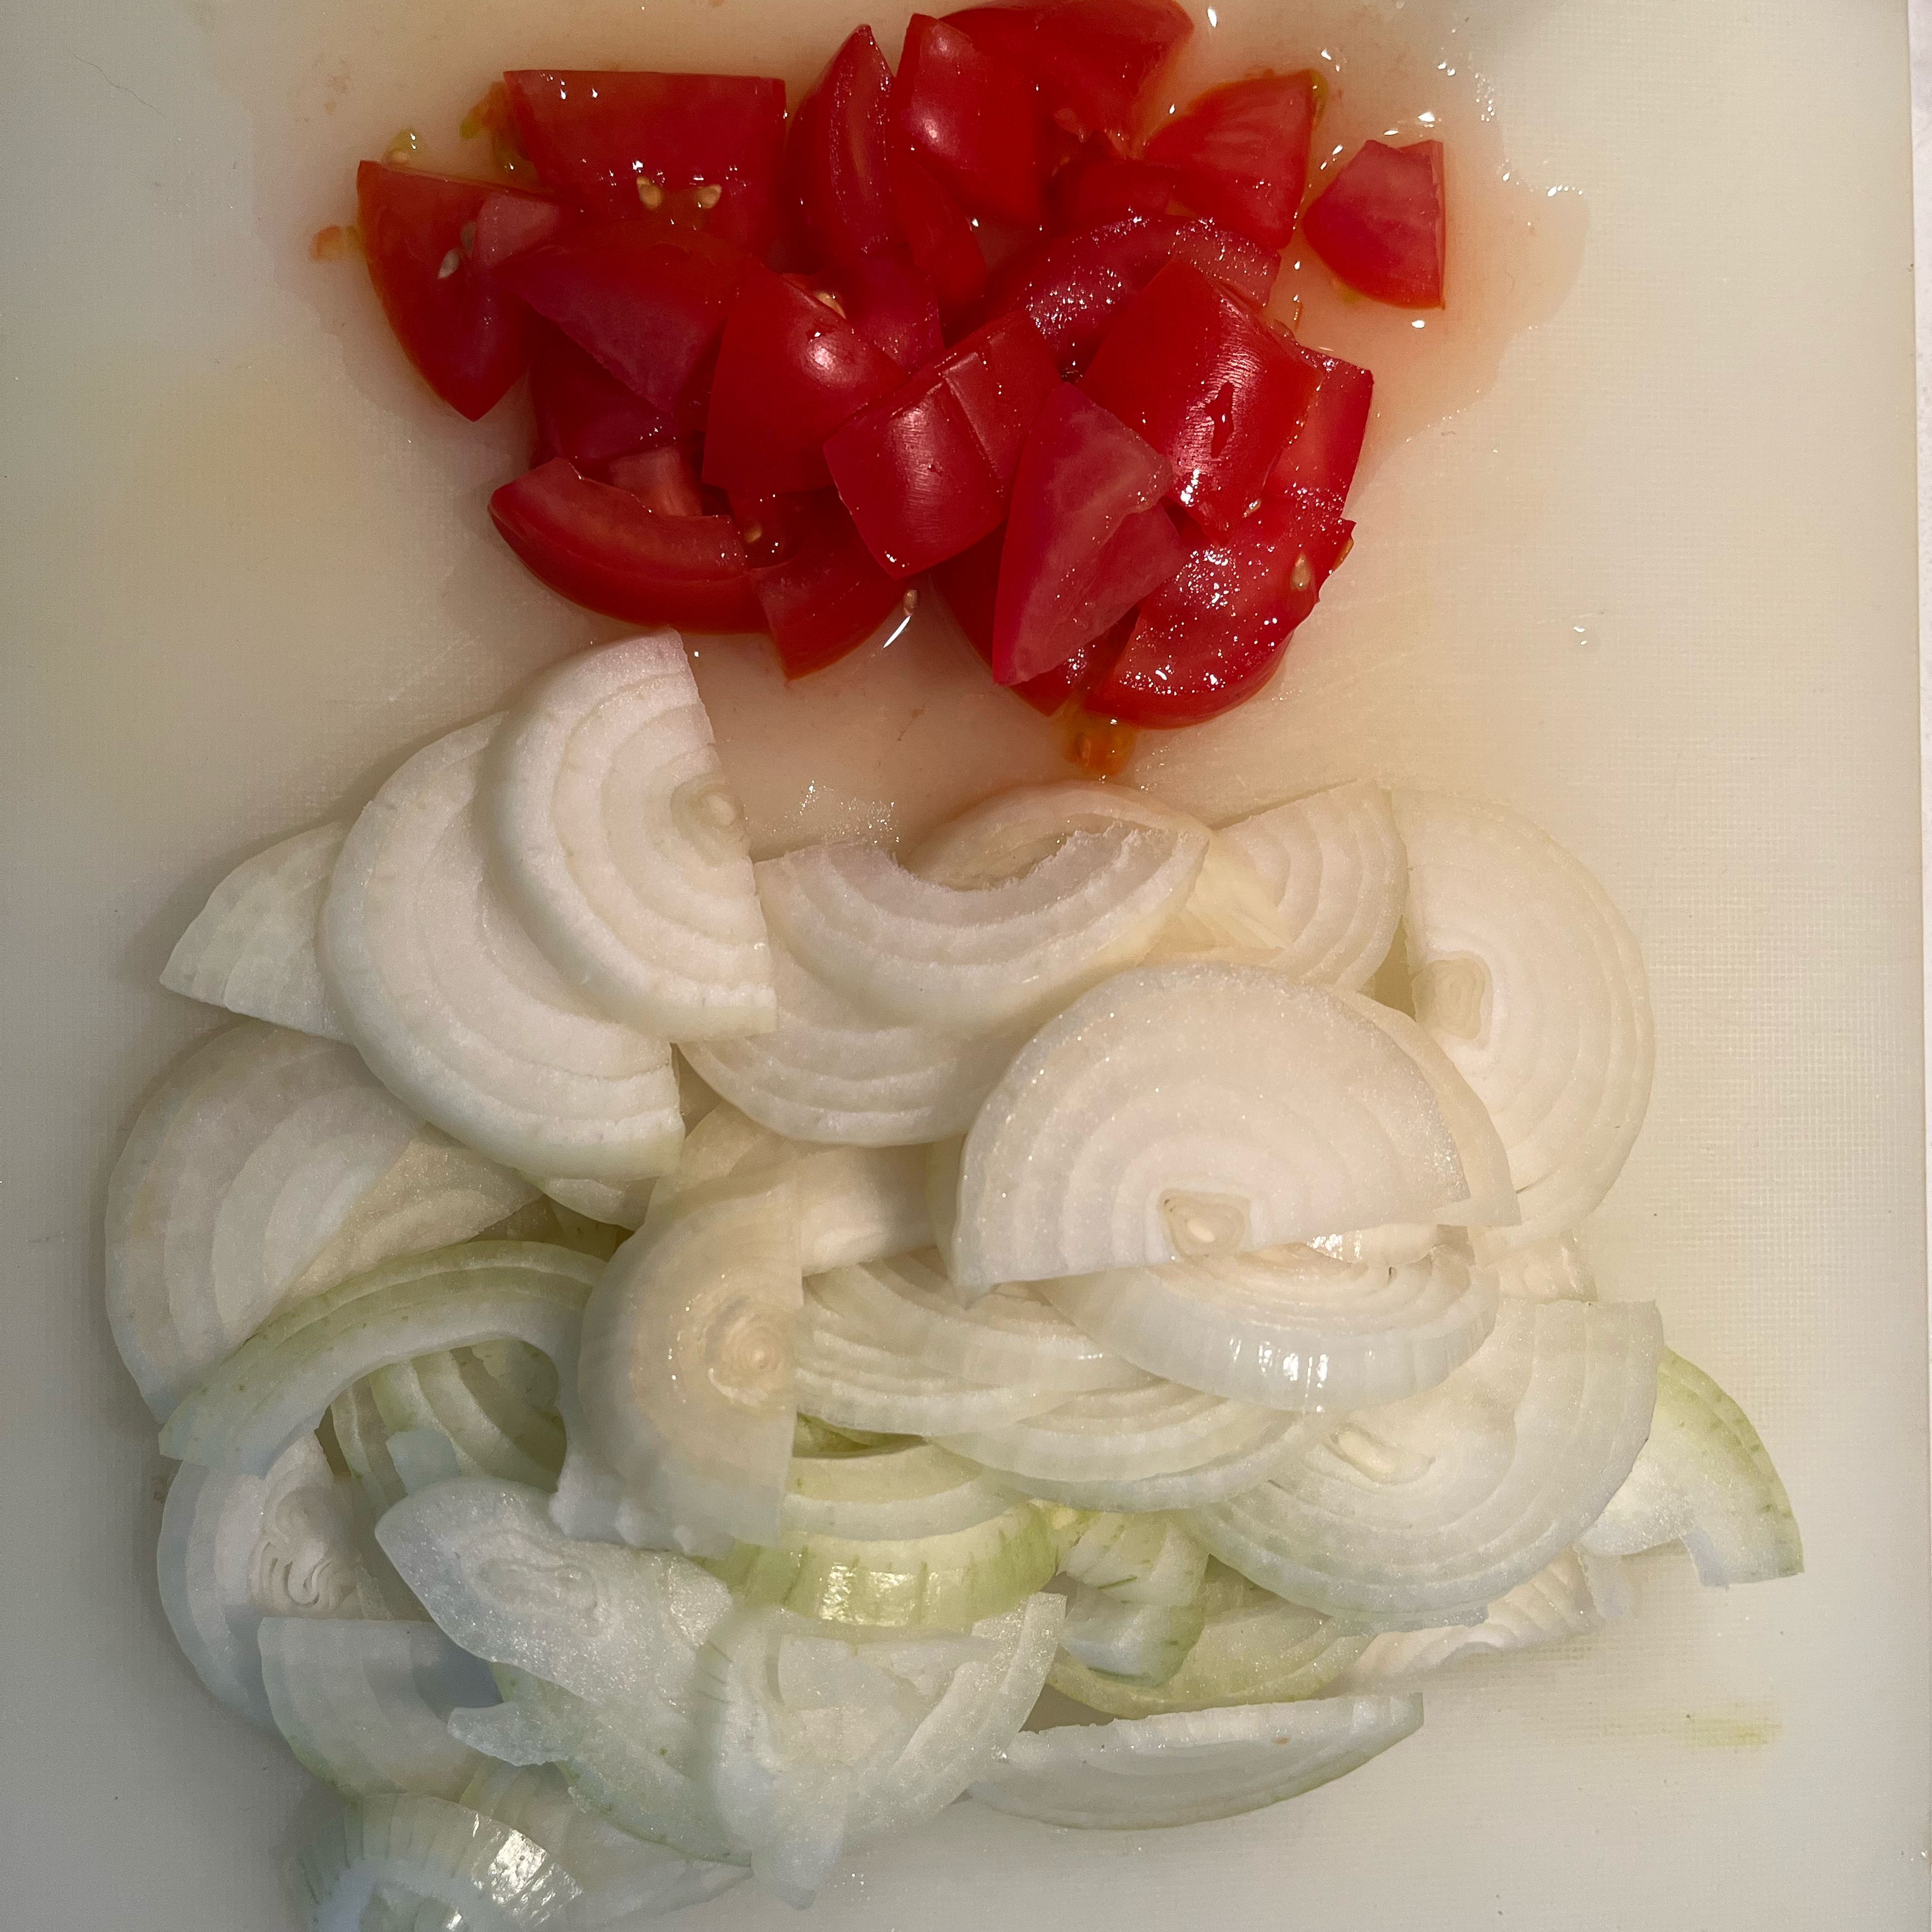 Peel and slice onions, dice tomato.